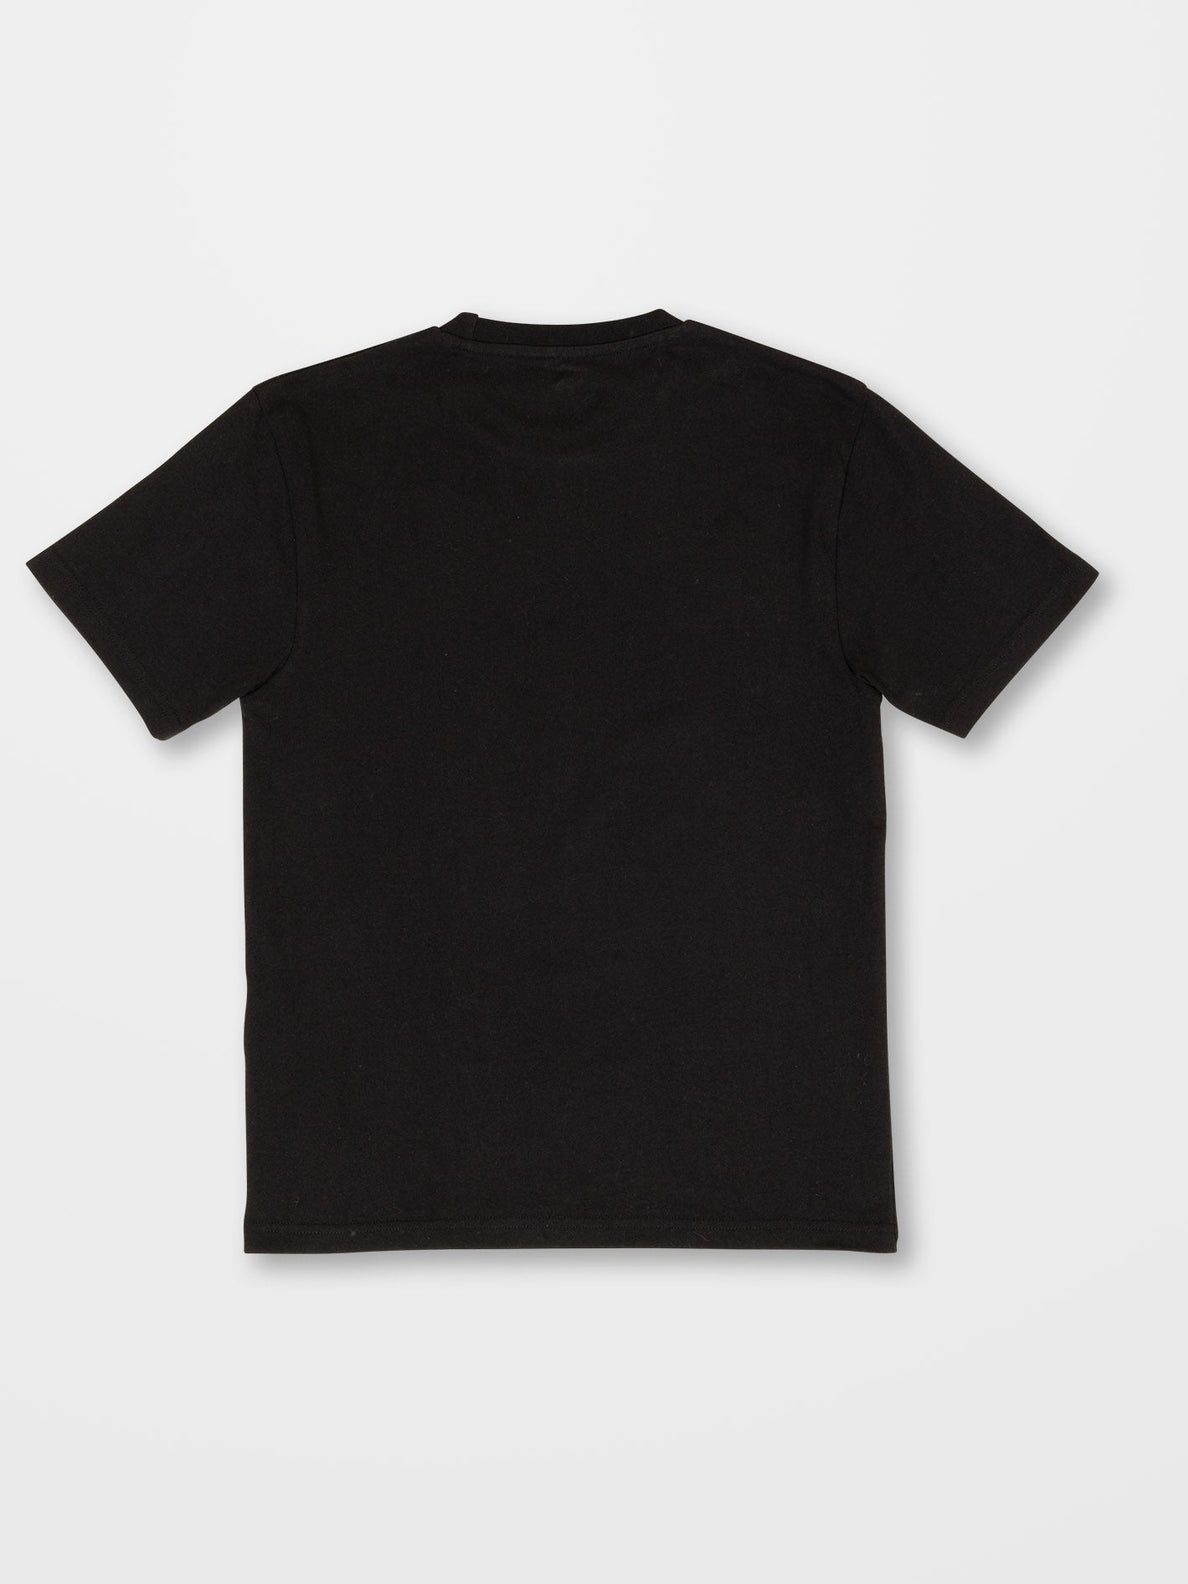 Alstone T-Shirt - BLACK - Kinder - Volcom Deutschland